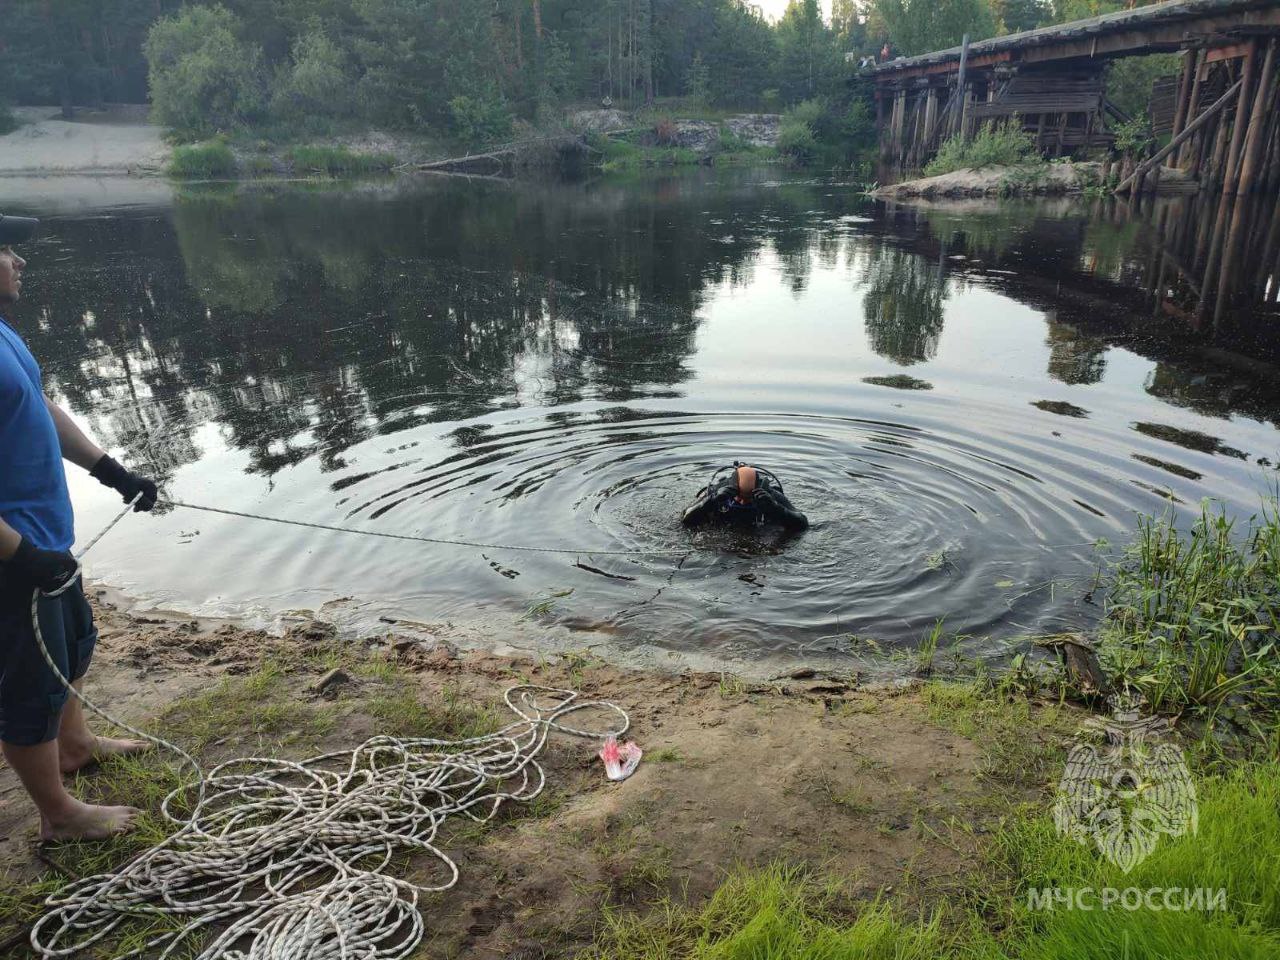 Сразу две трагедии на воде произошли в Нижегородской области за день: утонули дети